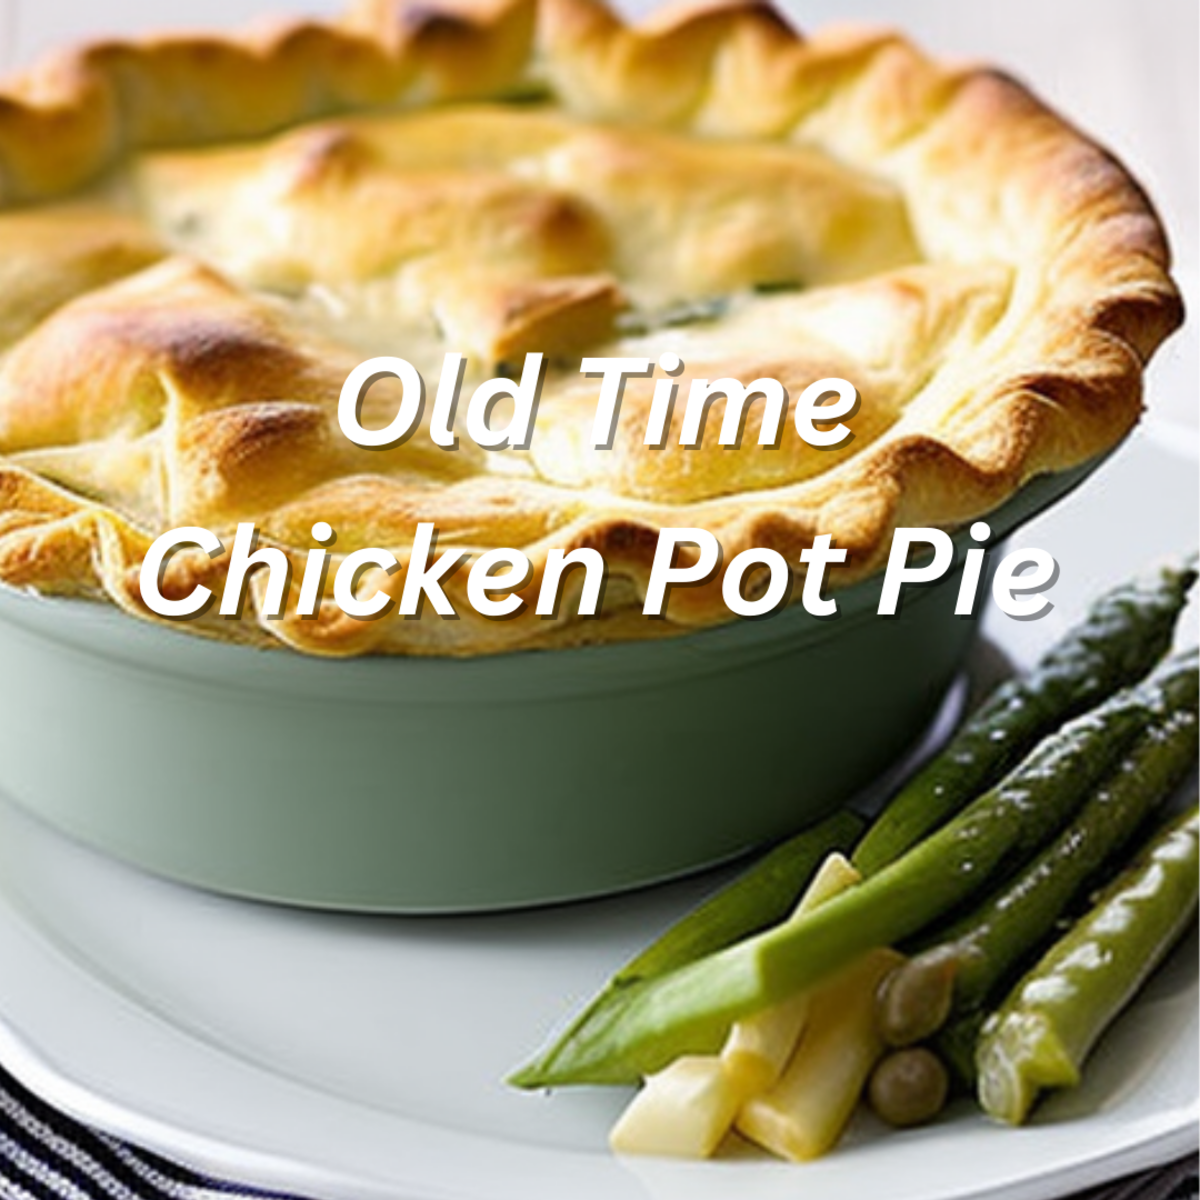 Old Time Chicken Pot Pie